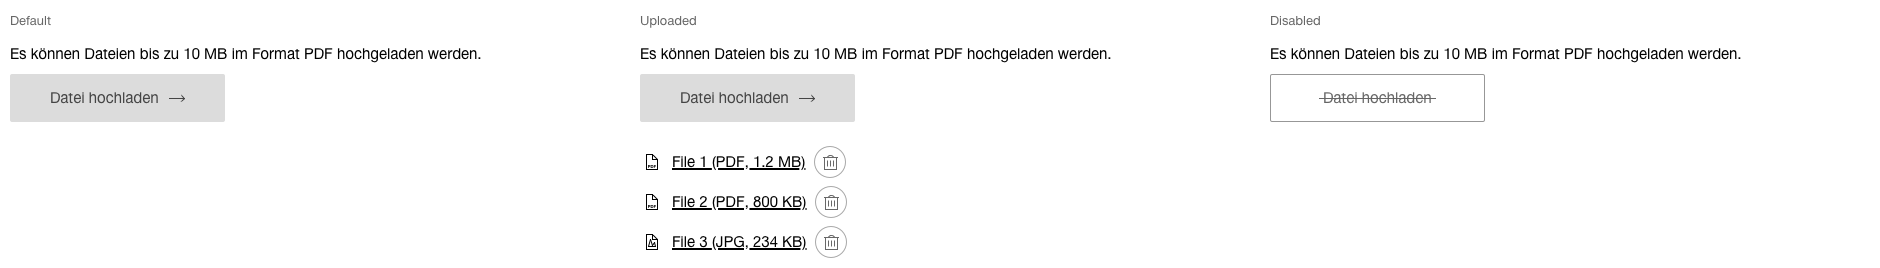 Darstellung der Komponente zur Hochladen von Dateien